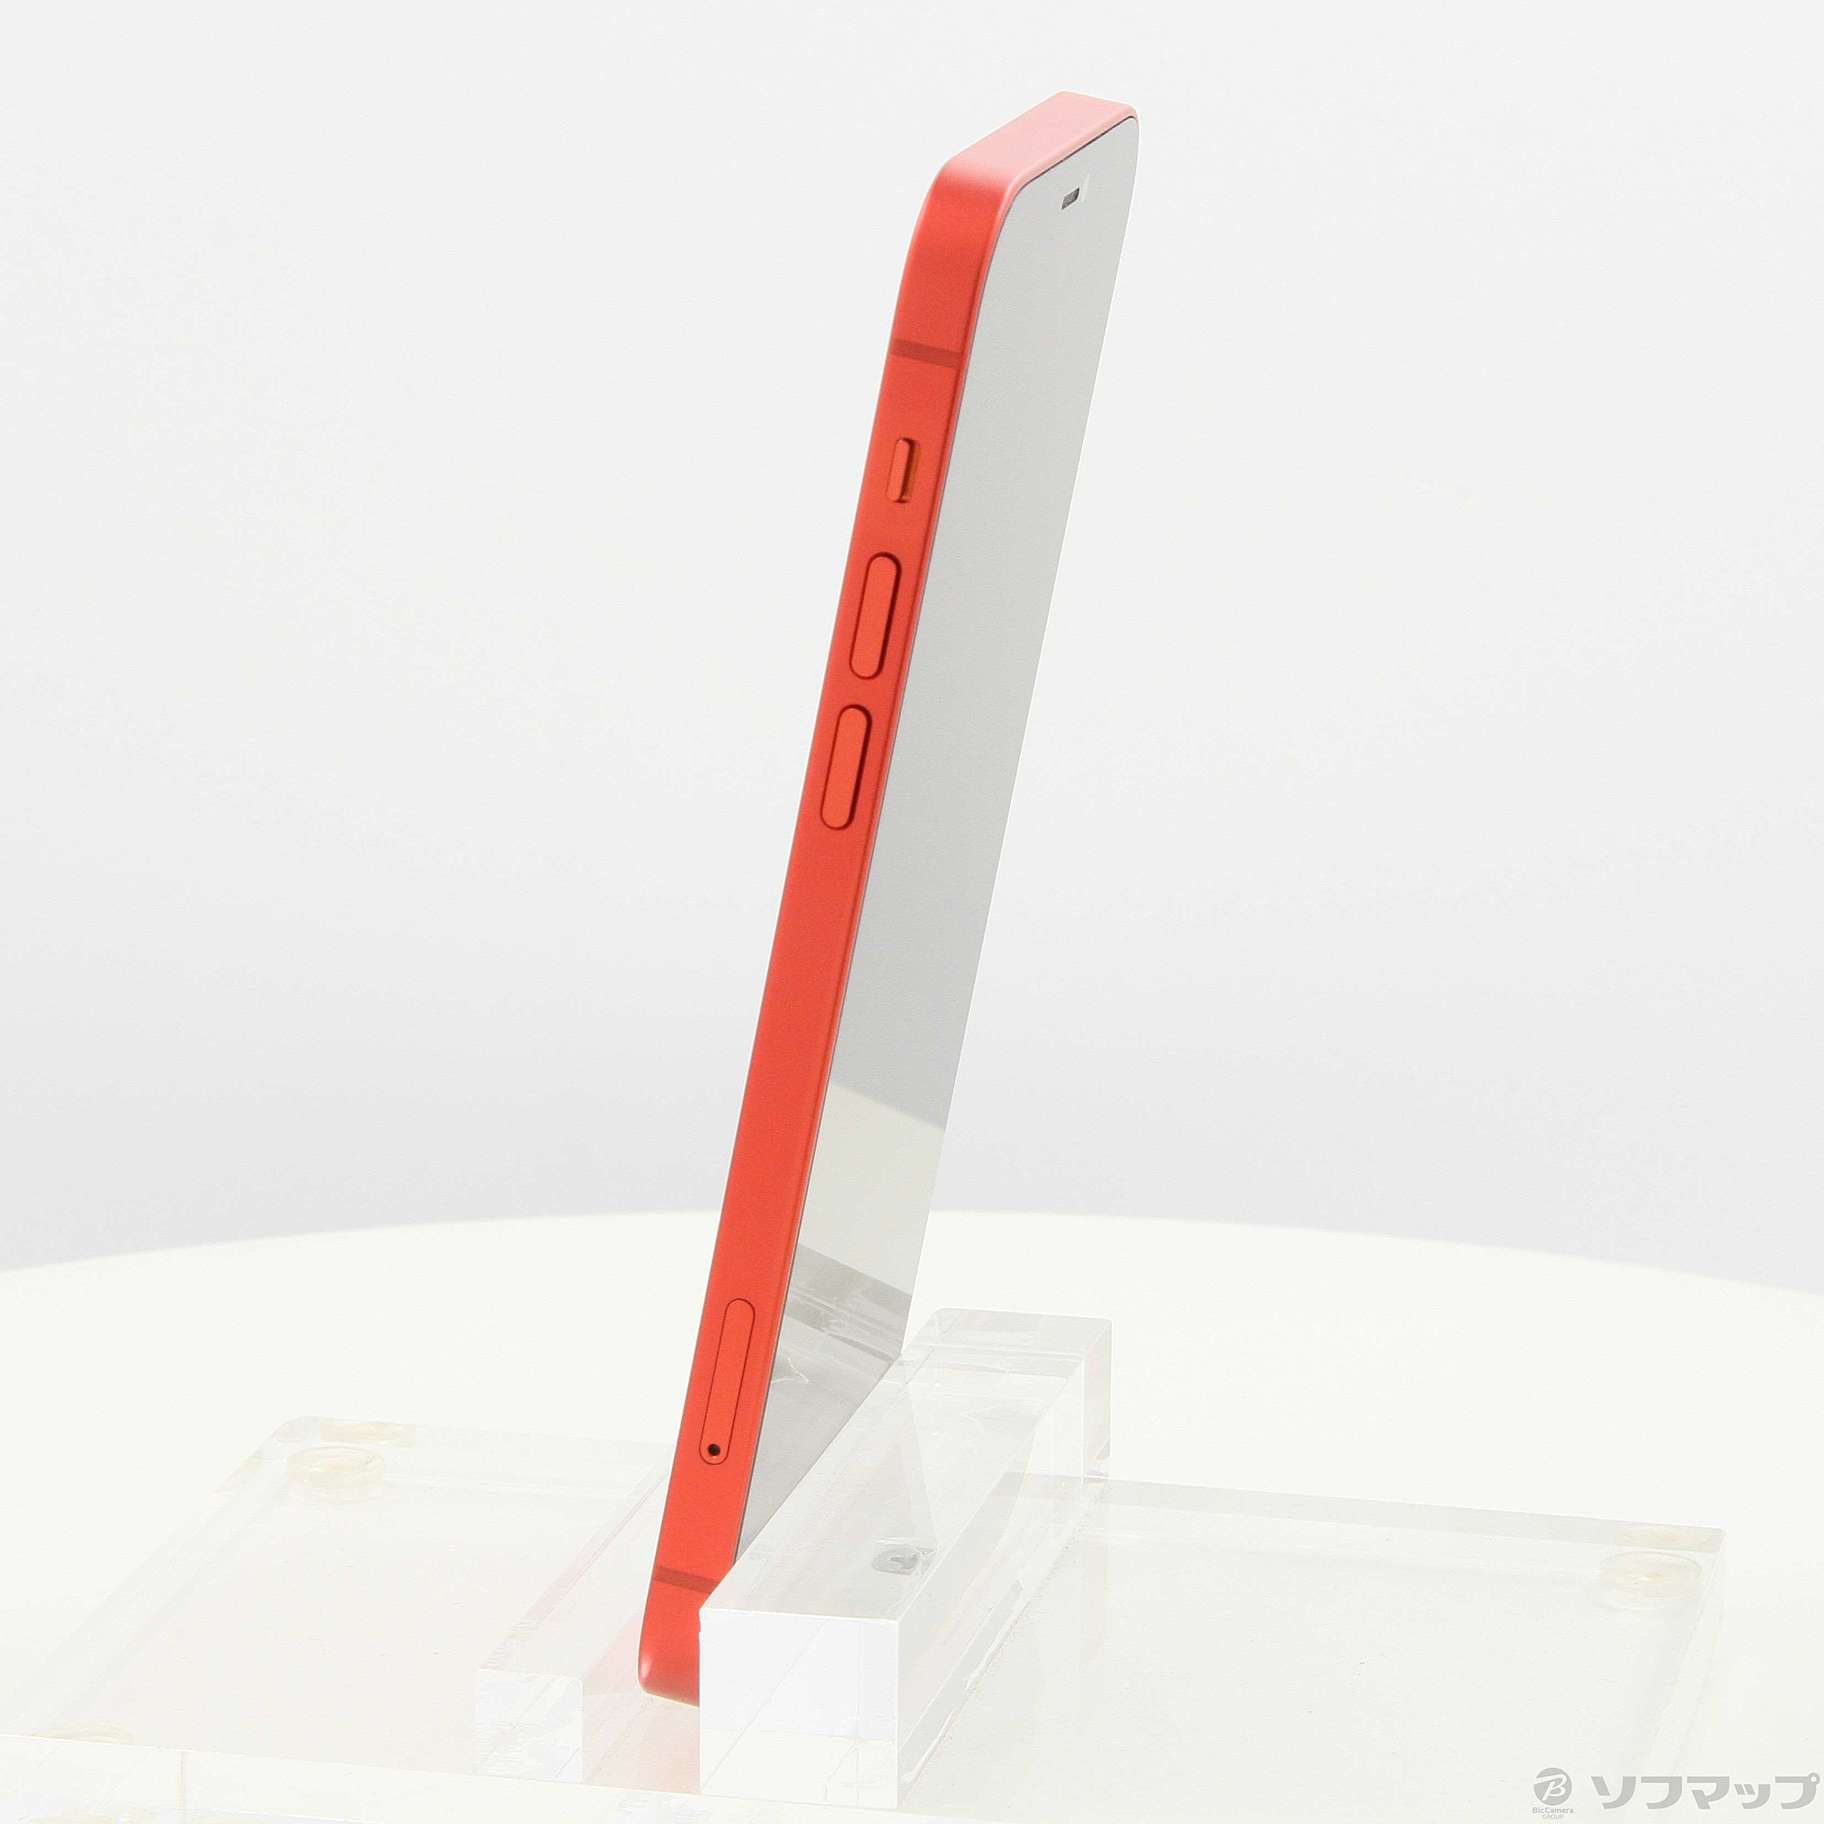 セール即納美品iPhone12product red128GBsimフリー動作完備 スマートフォン本体